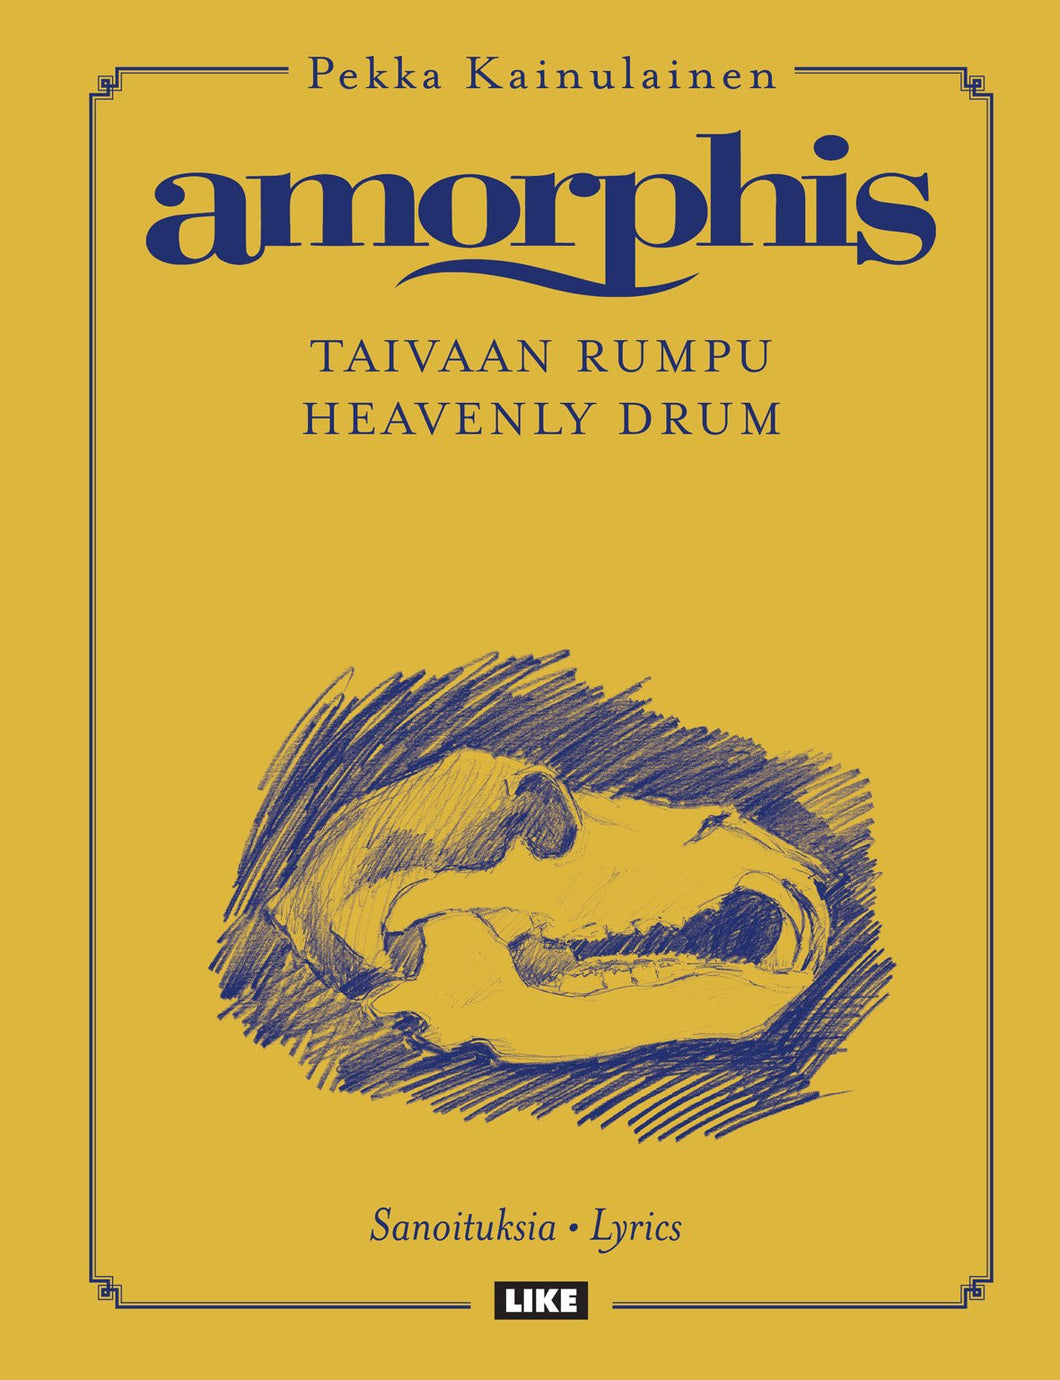 Amorphis-Pekka Kainulainen-Taivaan rumpu-Heavenly Drum-Sanoituksia-Lyrics. With a signature.